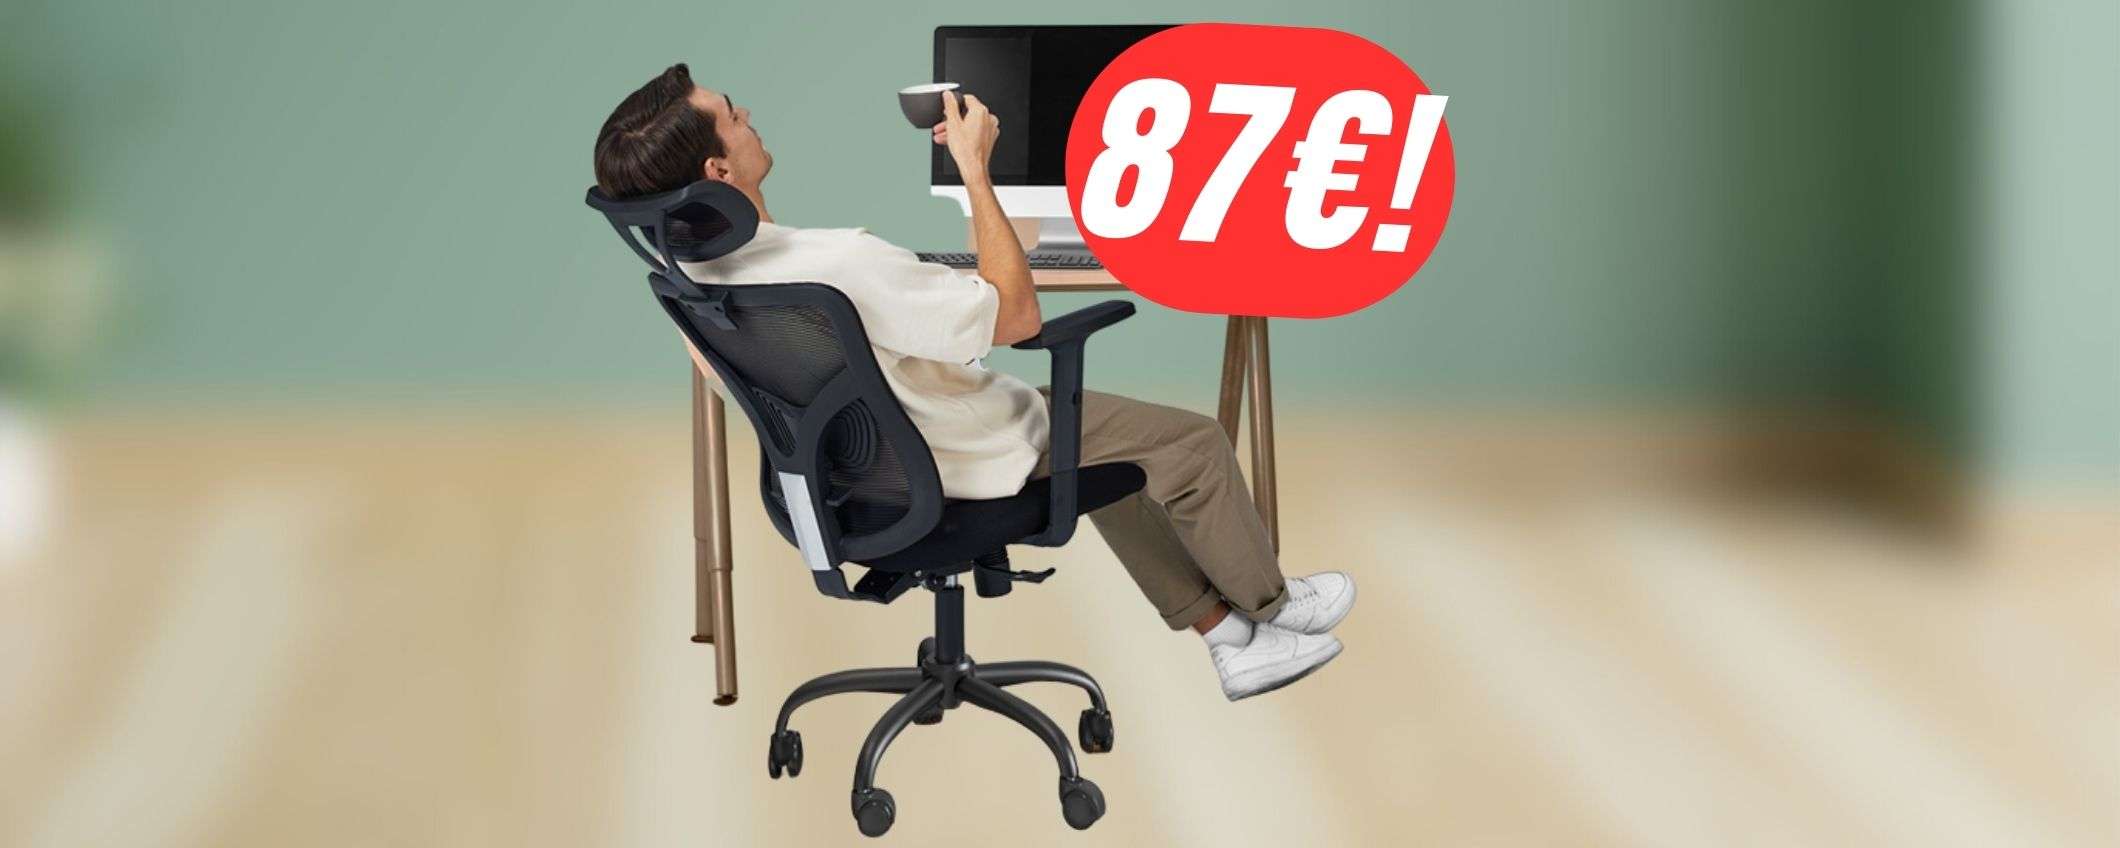 Sedia ergonomica a soli 87€ per una postura perfetta grazie al COUPON!